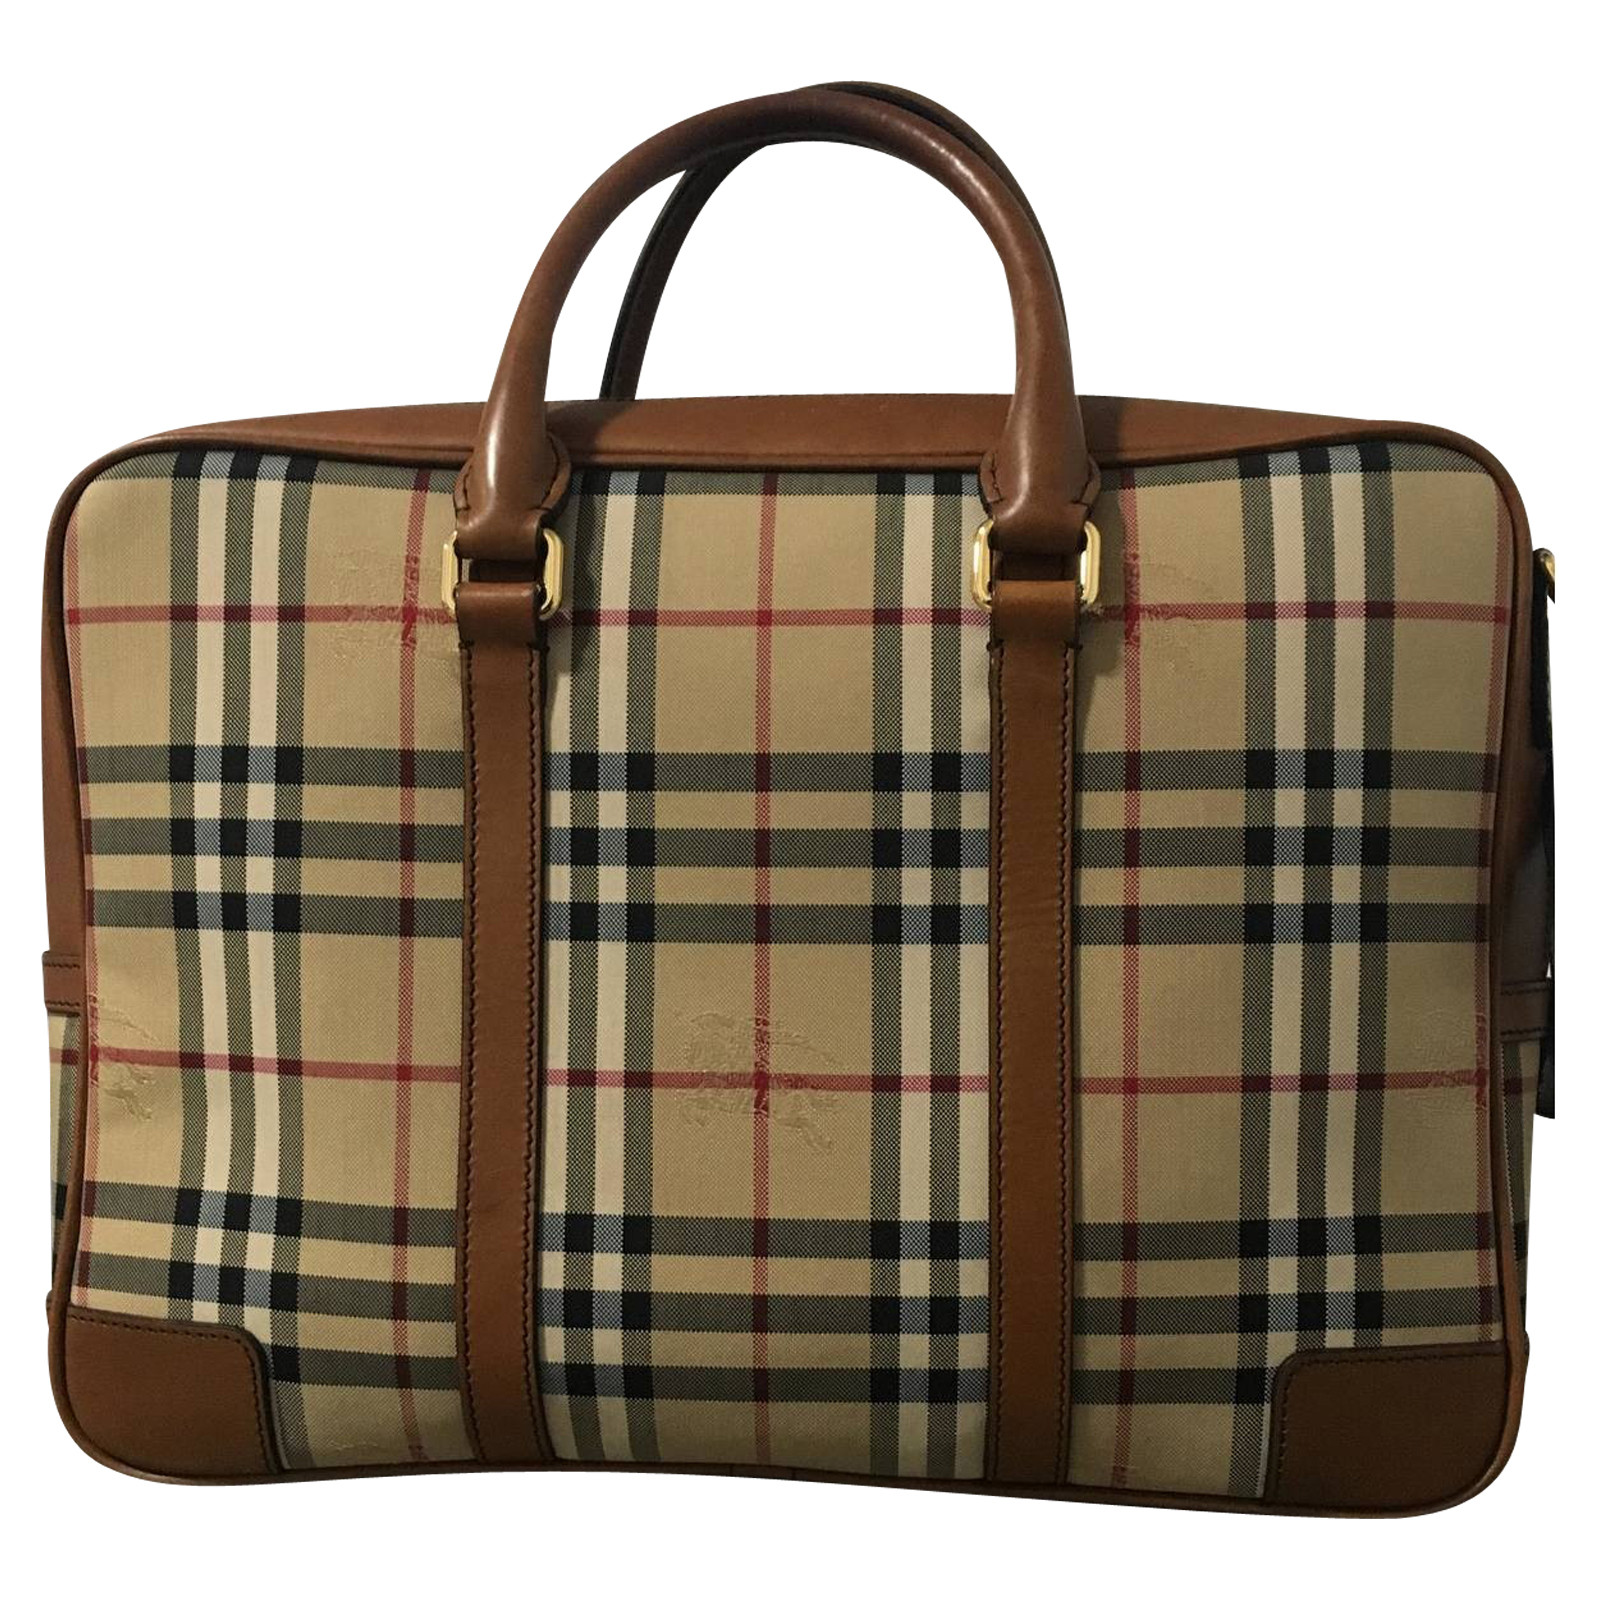 Burberry Handtasche mit Nova-Check-Muster - Second Hand Burberry Handtasche  mit Nova-Check-Muster gebraucht kaufen für 852€ (3107333)